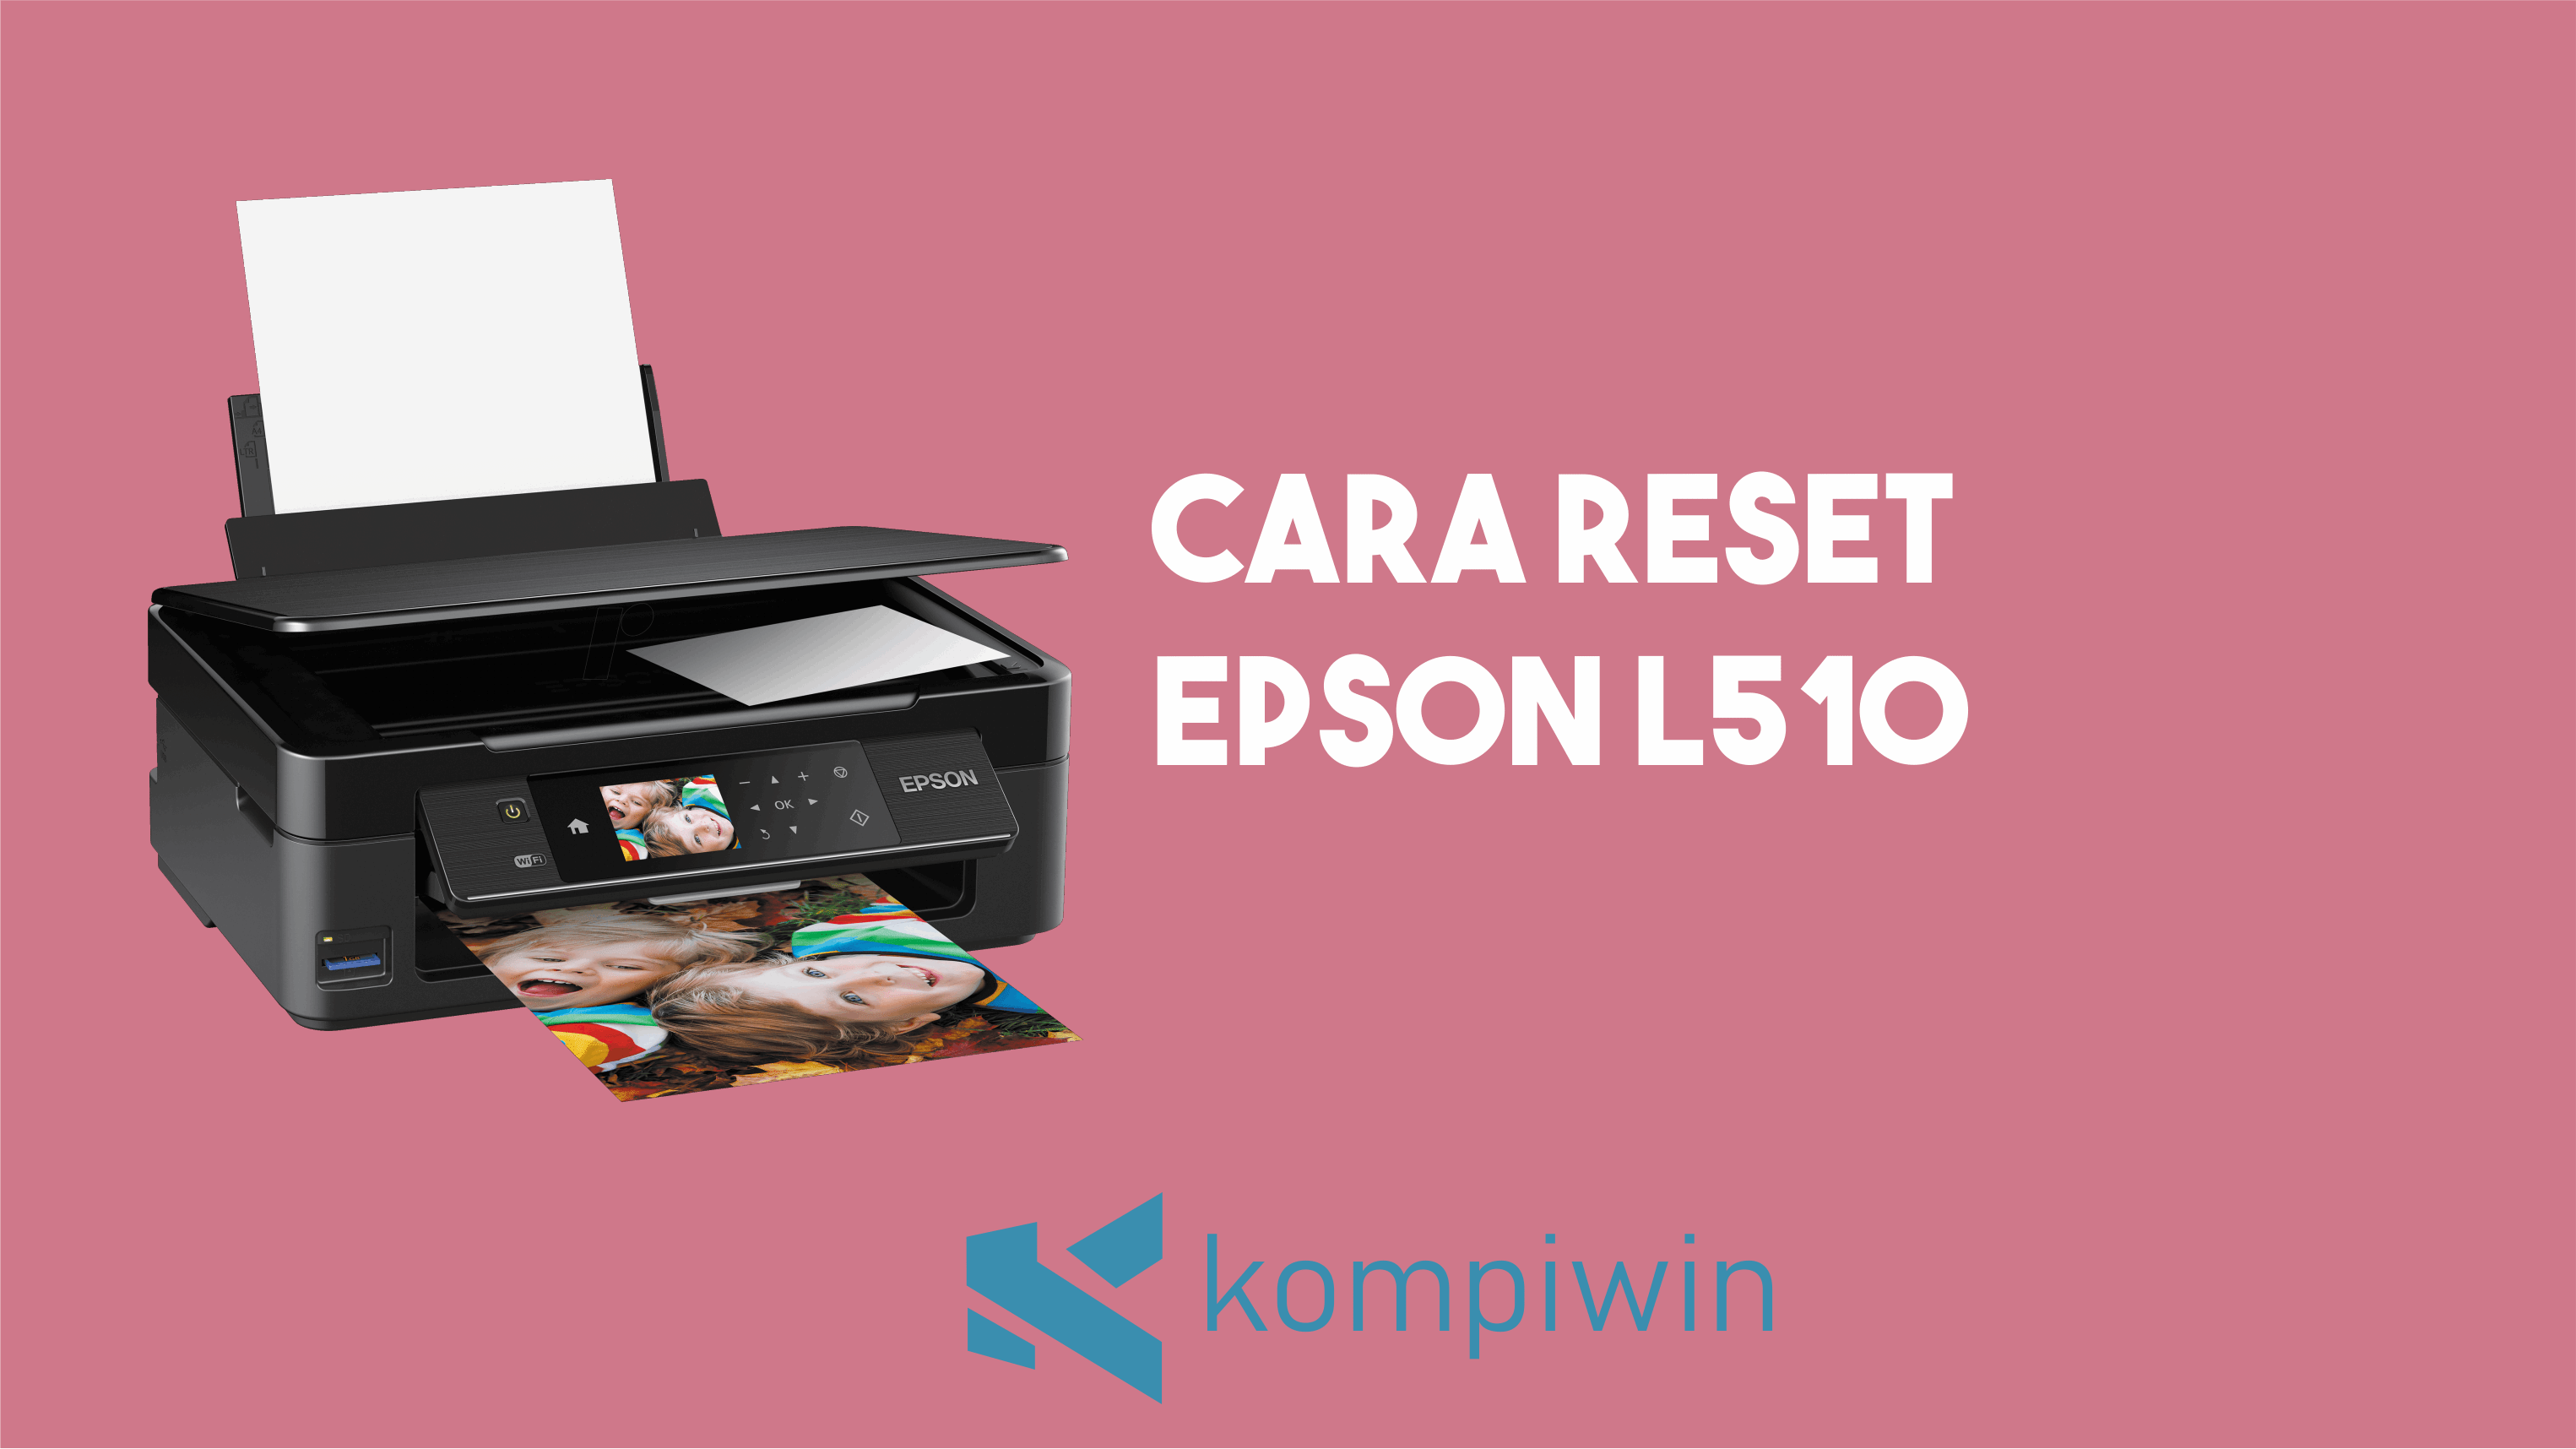 Cara Reset Epson L510